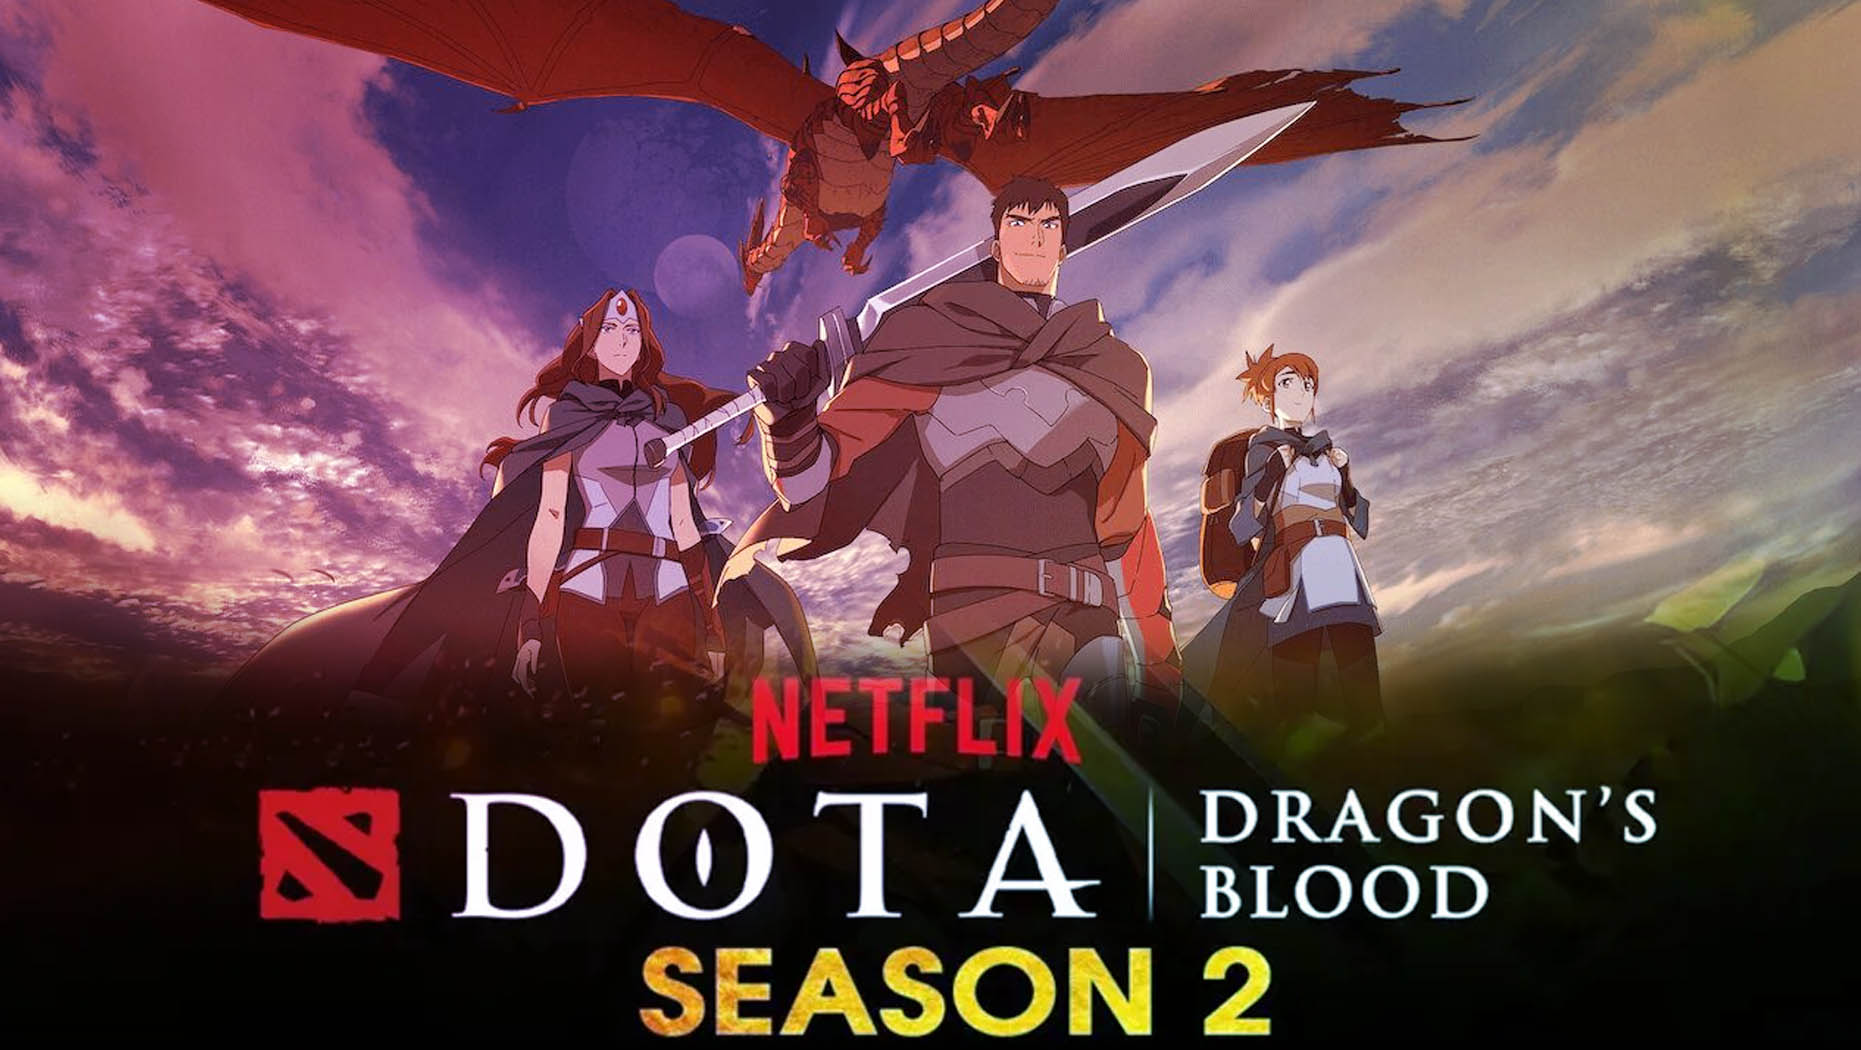 'Dota Dragon's Blood' Season 2